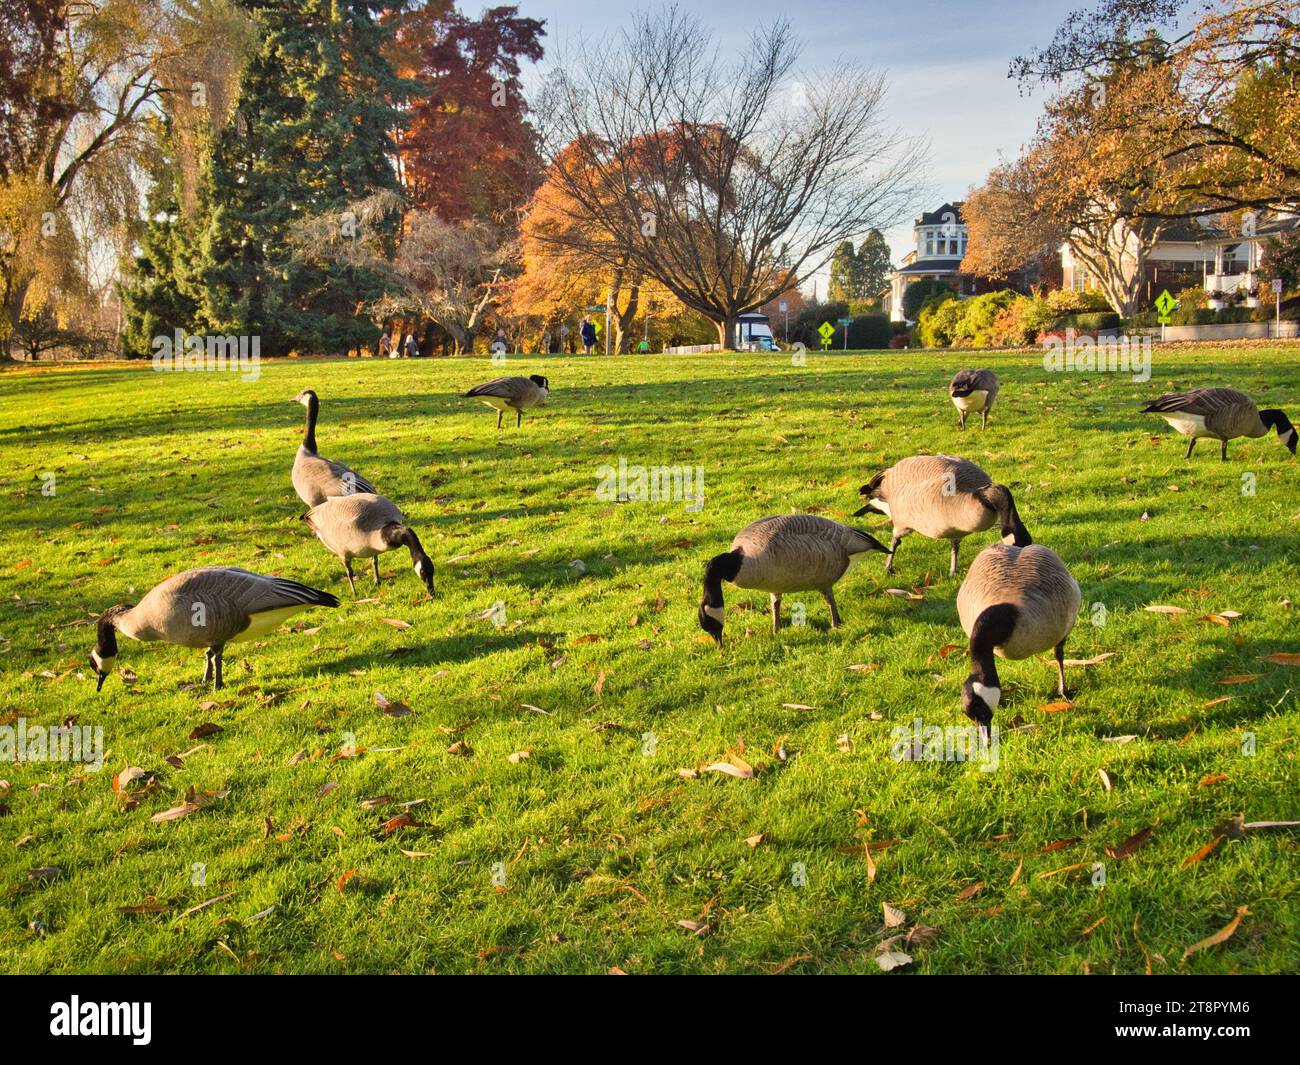 Un troupeau d'oies du Canada paissent sur l'herbe verte dans le parc municipal de Seattle à l'automne par une belle journée ensoleillée. Résidences de quartier en arrière-plan. Banque D'Images